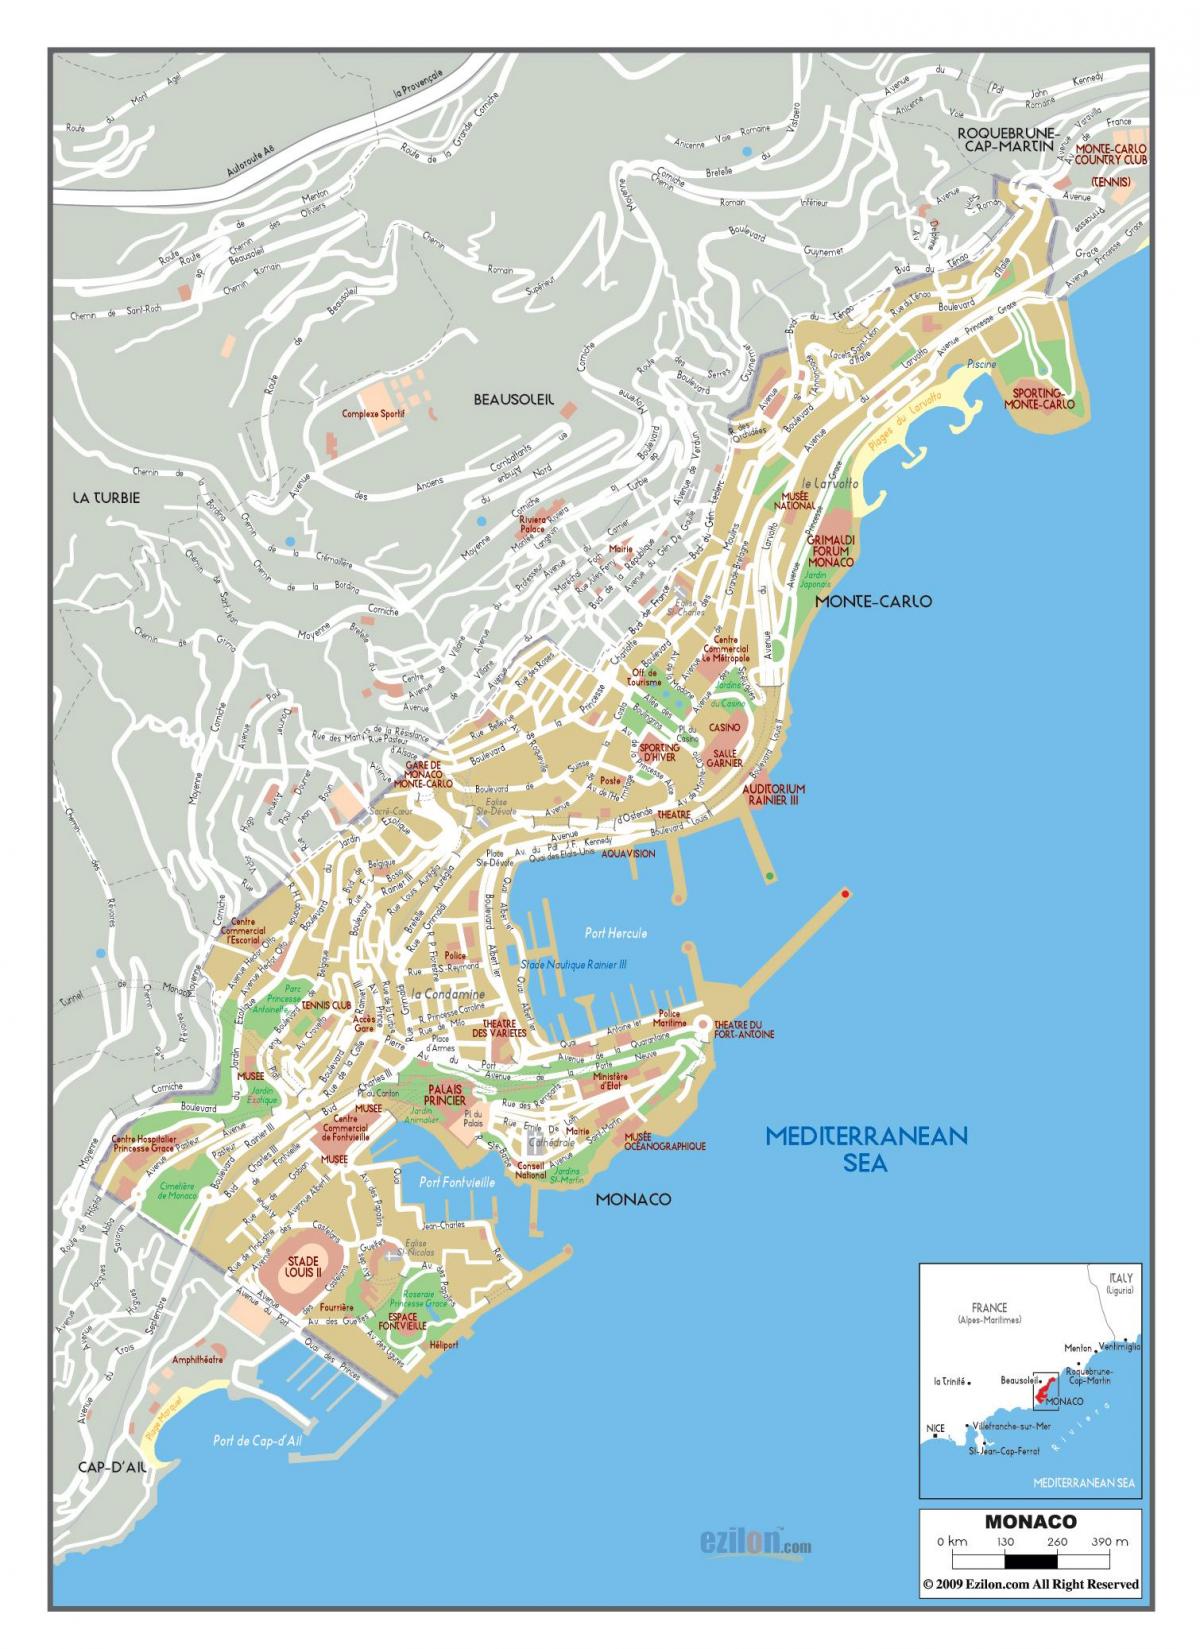 Plan des routes de Monaco